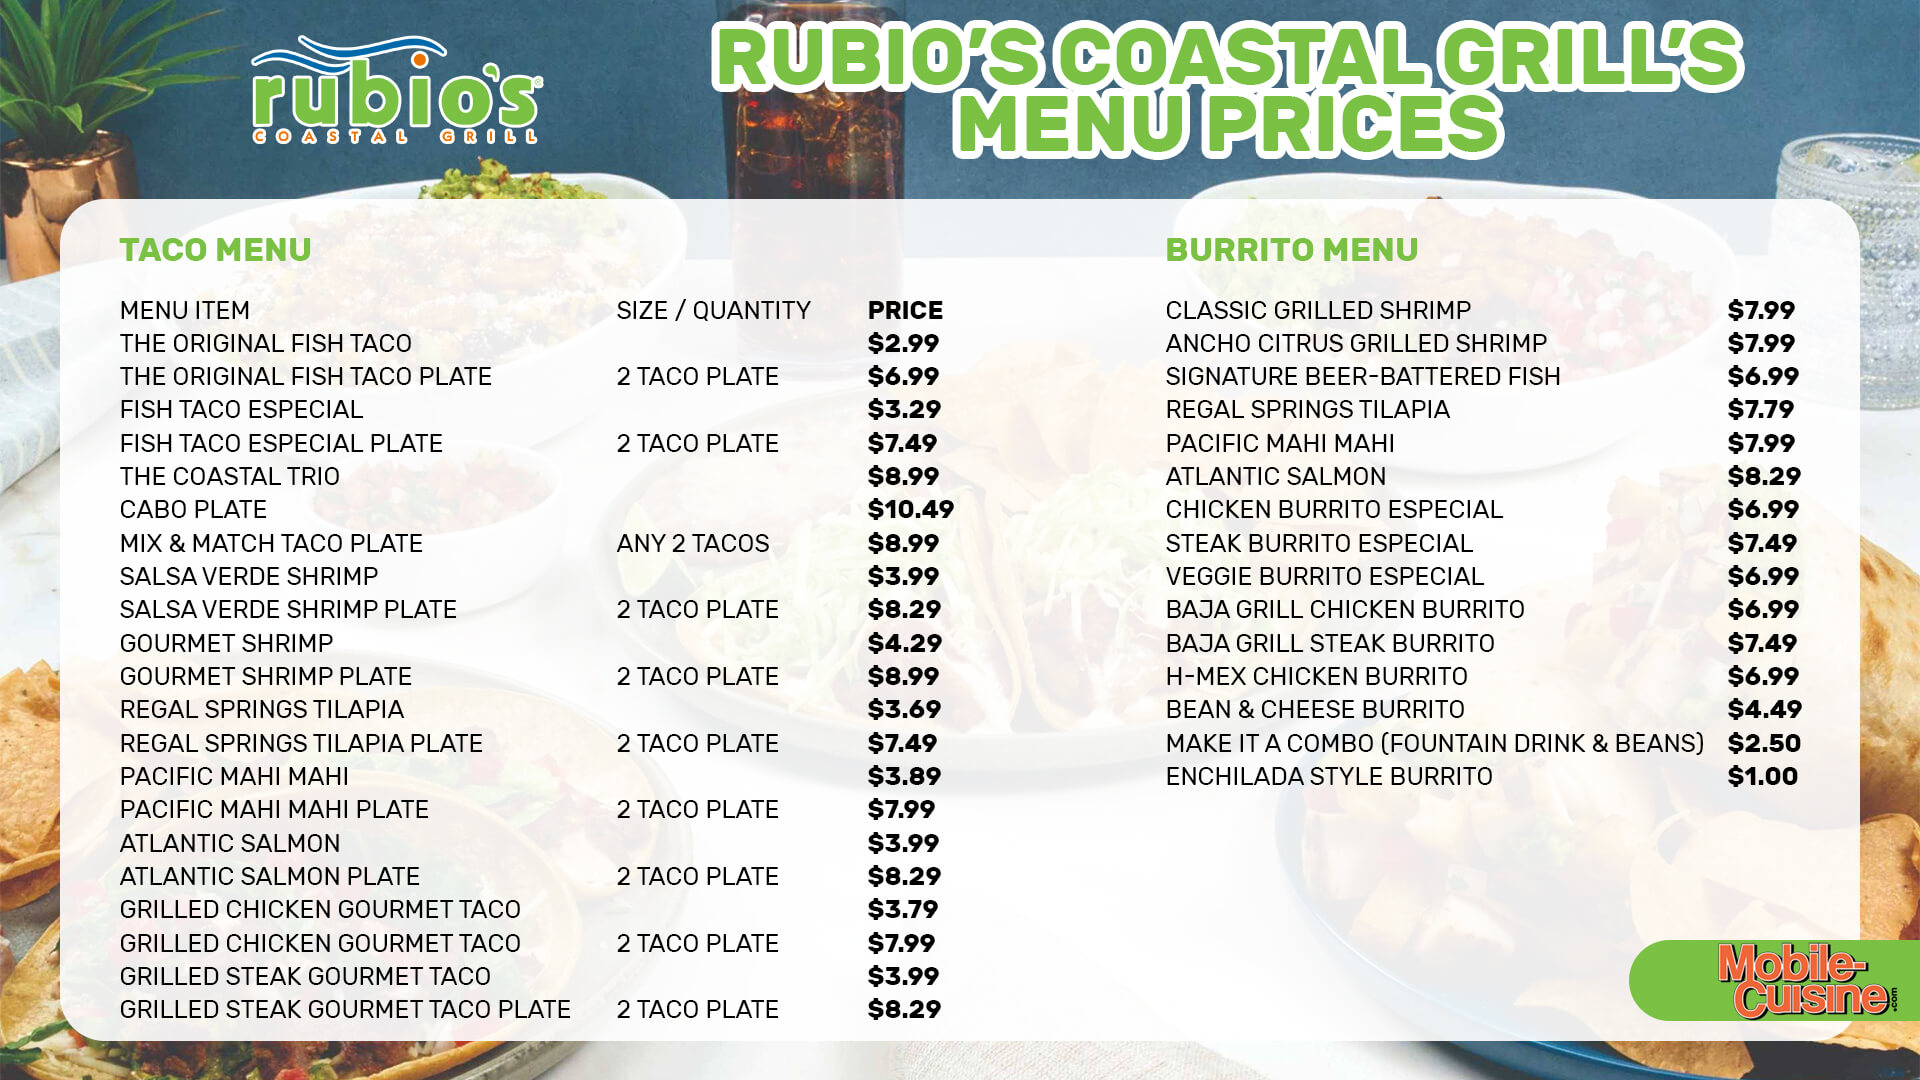 Rubio’s Coastal Grill menu prices